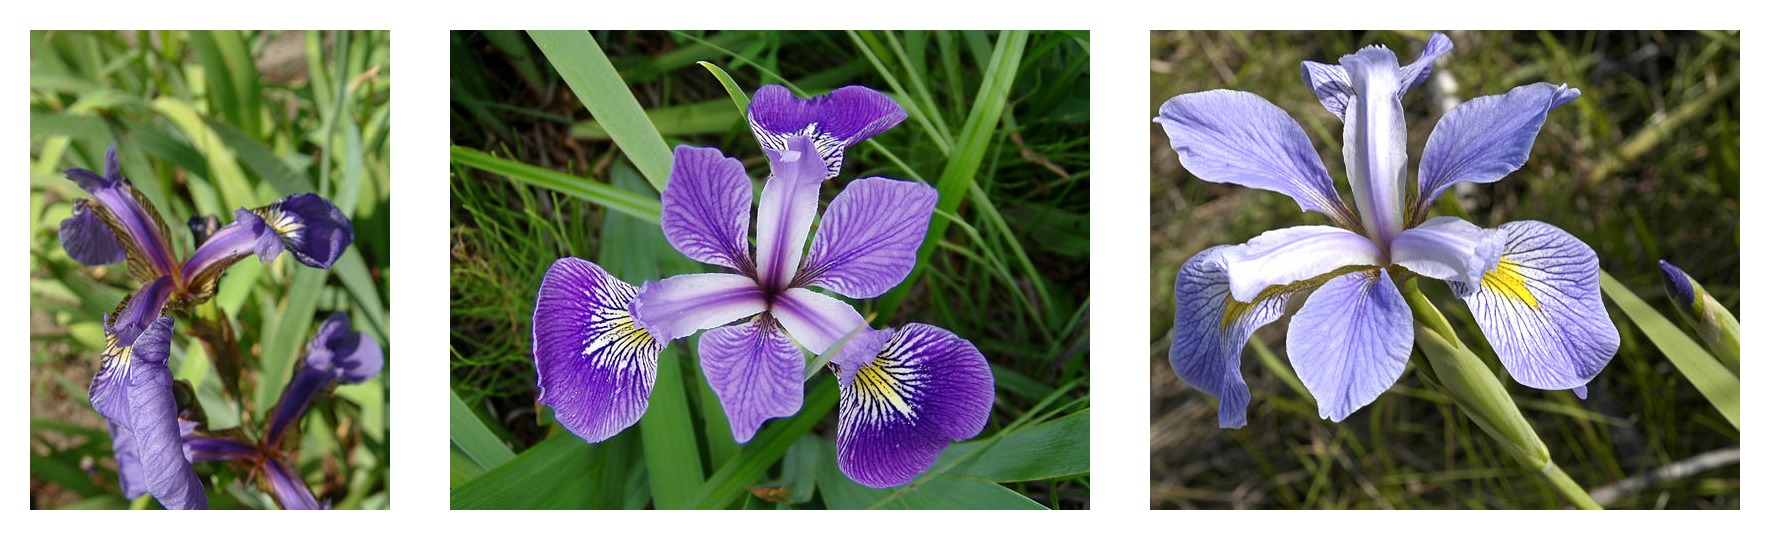 مقارنة هندسة البتلة لثلاثة أنواع من القزحية: Iris setosa و Iris virginica و Iris versicolor